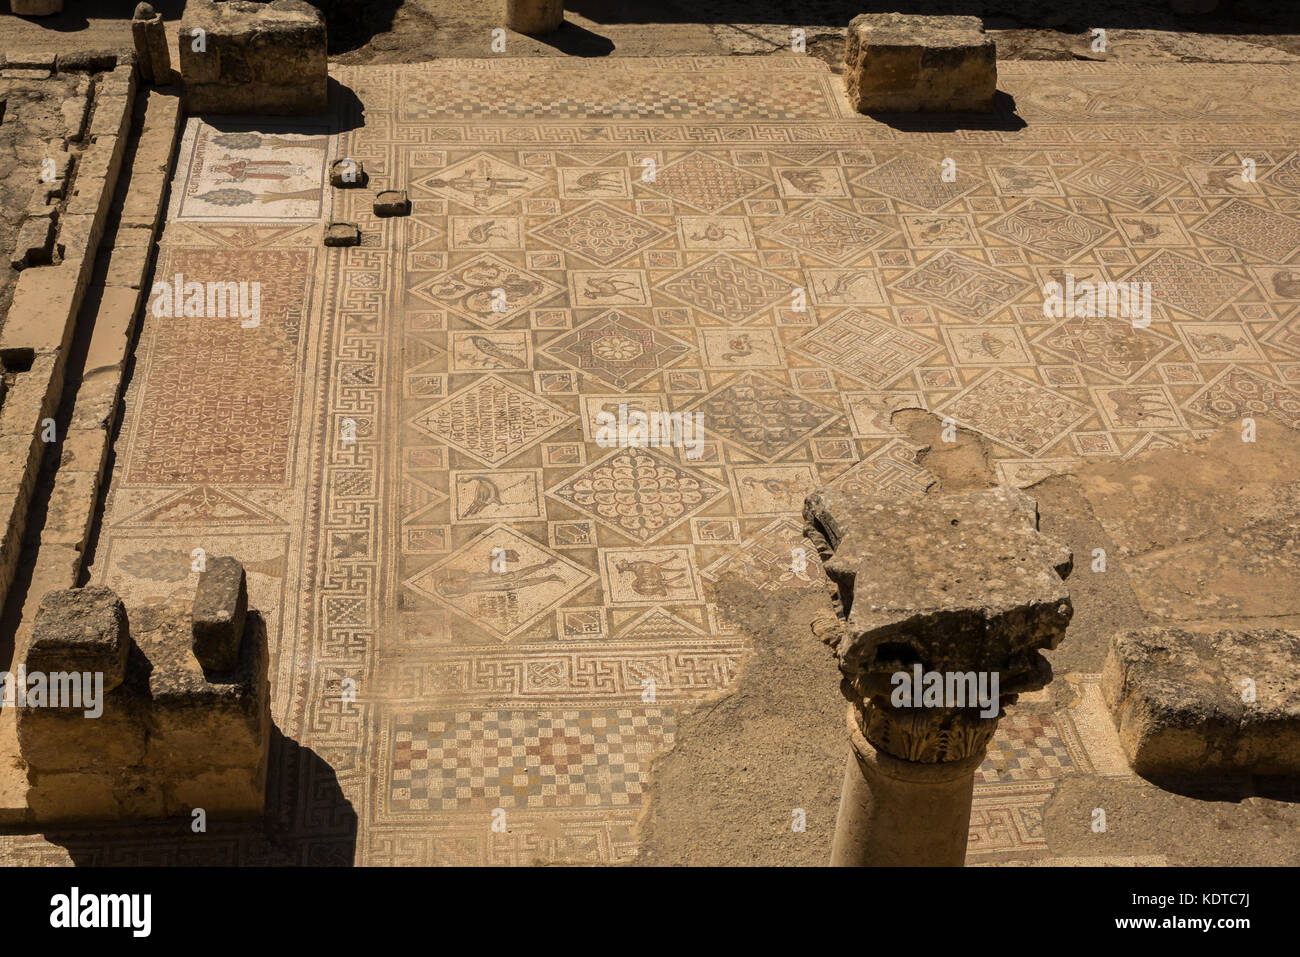 Pavimento bizantino mosaico nella chiesa dei Santi Cosma e Damiano, città romana di Jerash, antica Gerasa, sito archeologico nel nord della Giordania, Medio Oriente Foto Stock